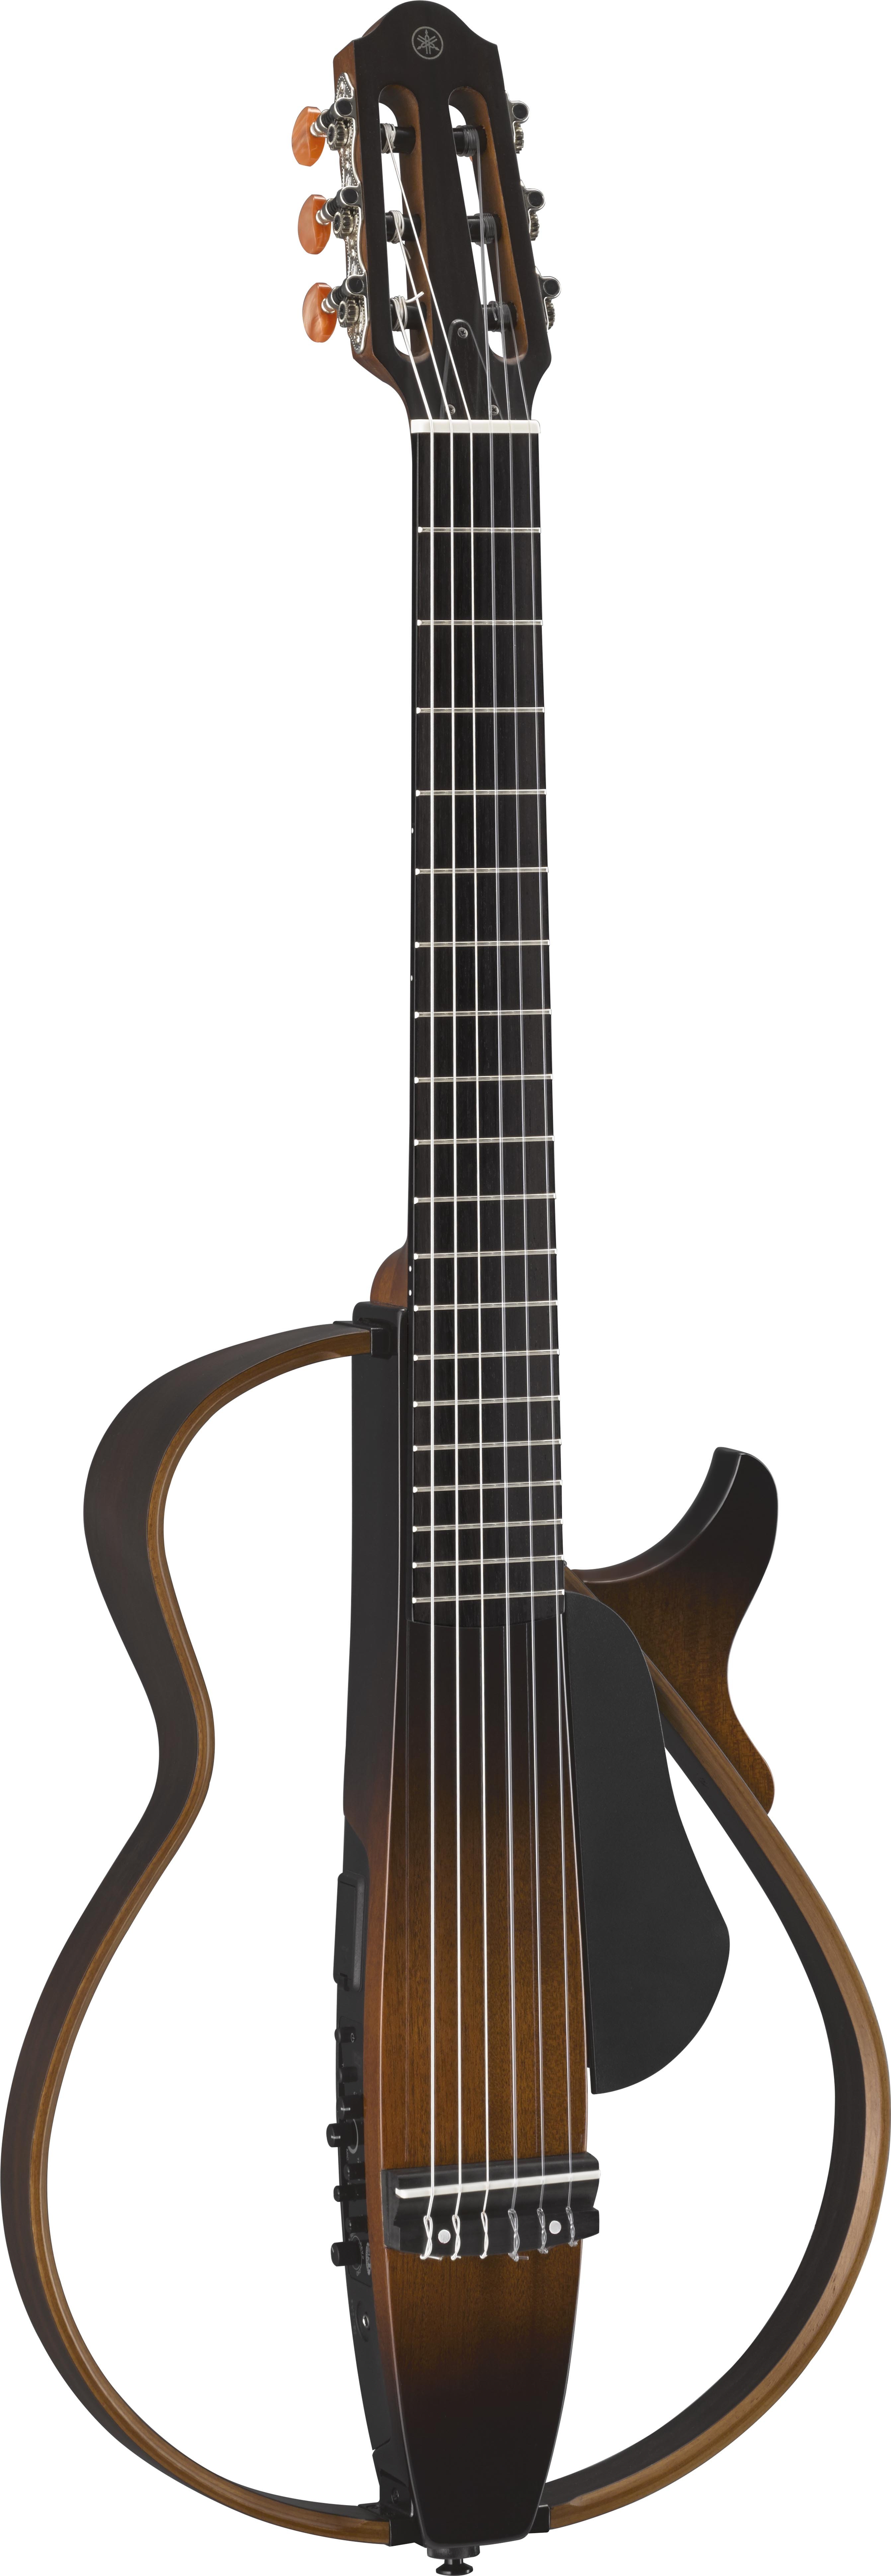 いラインアップ SLG200N サイレントギター お値下げ交渉可能です 